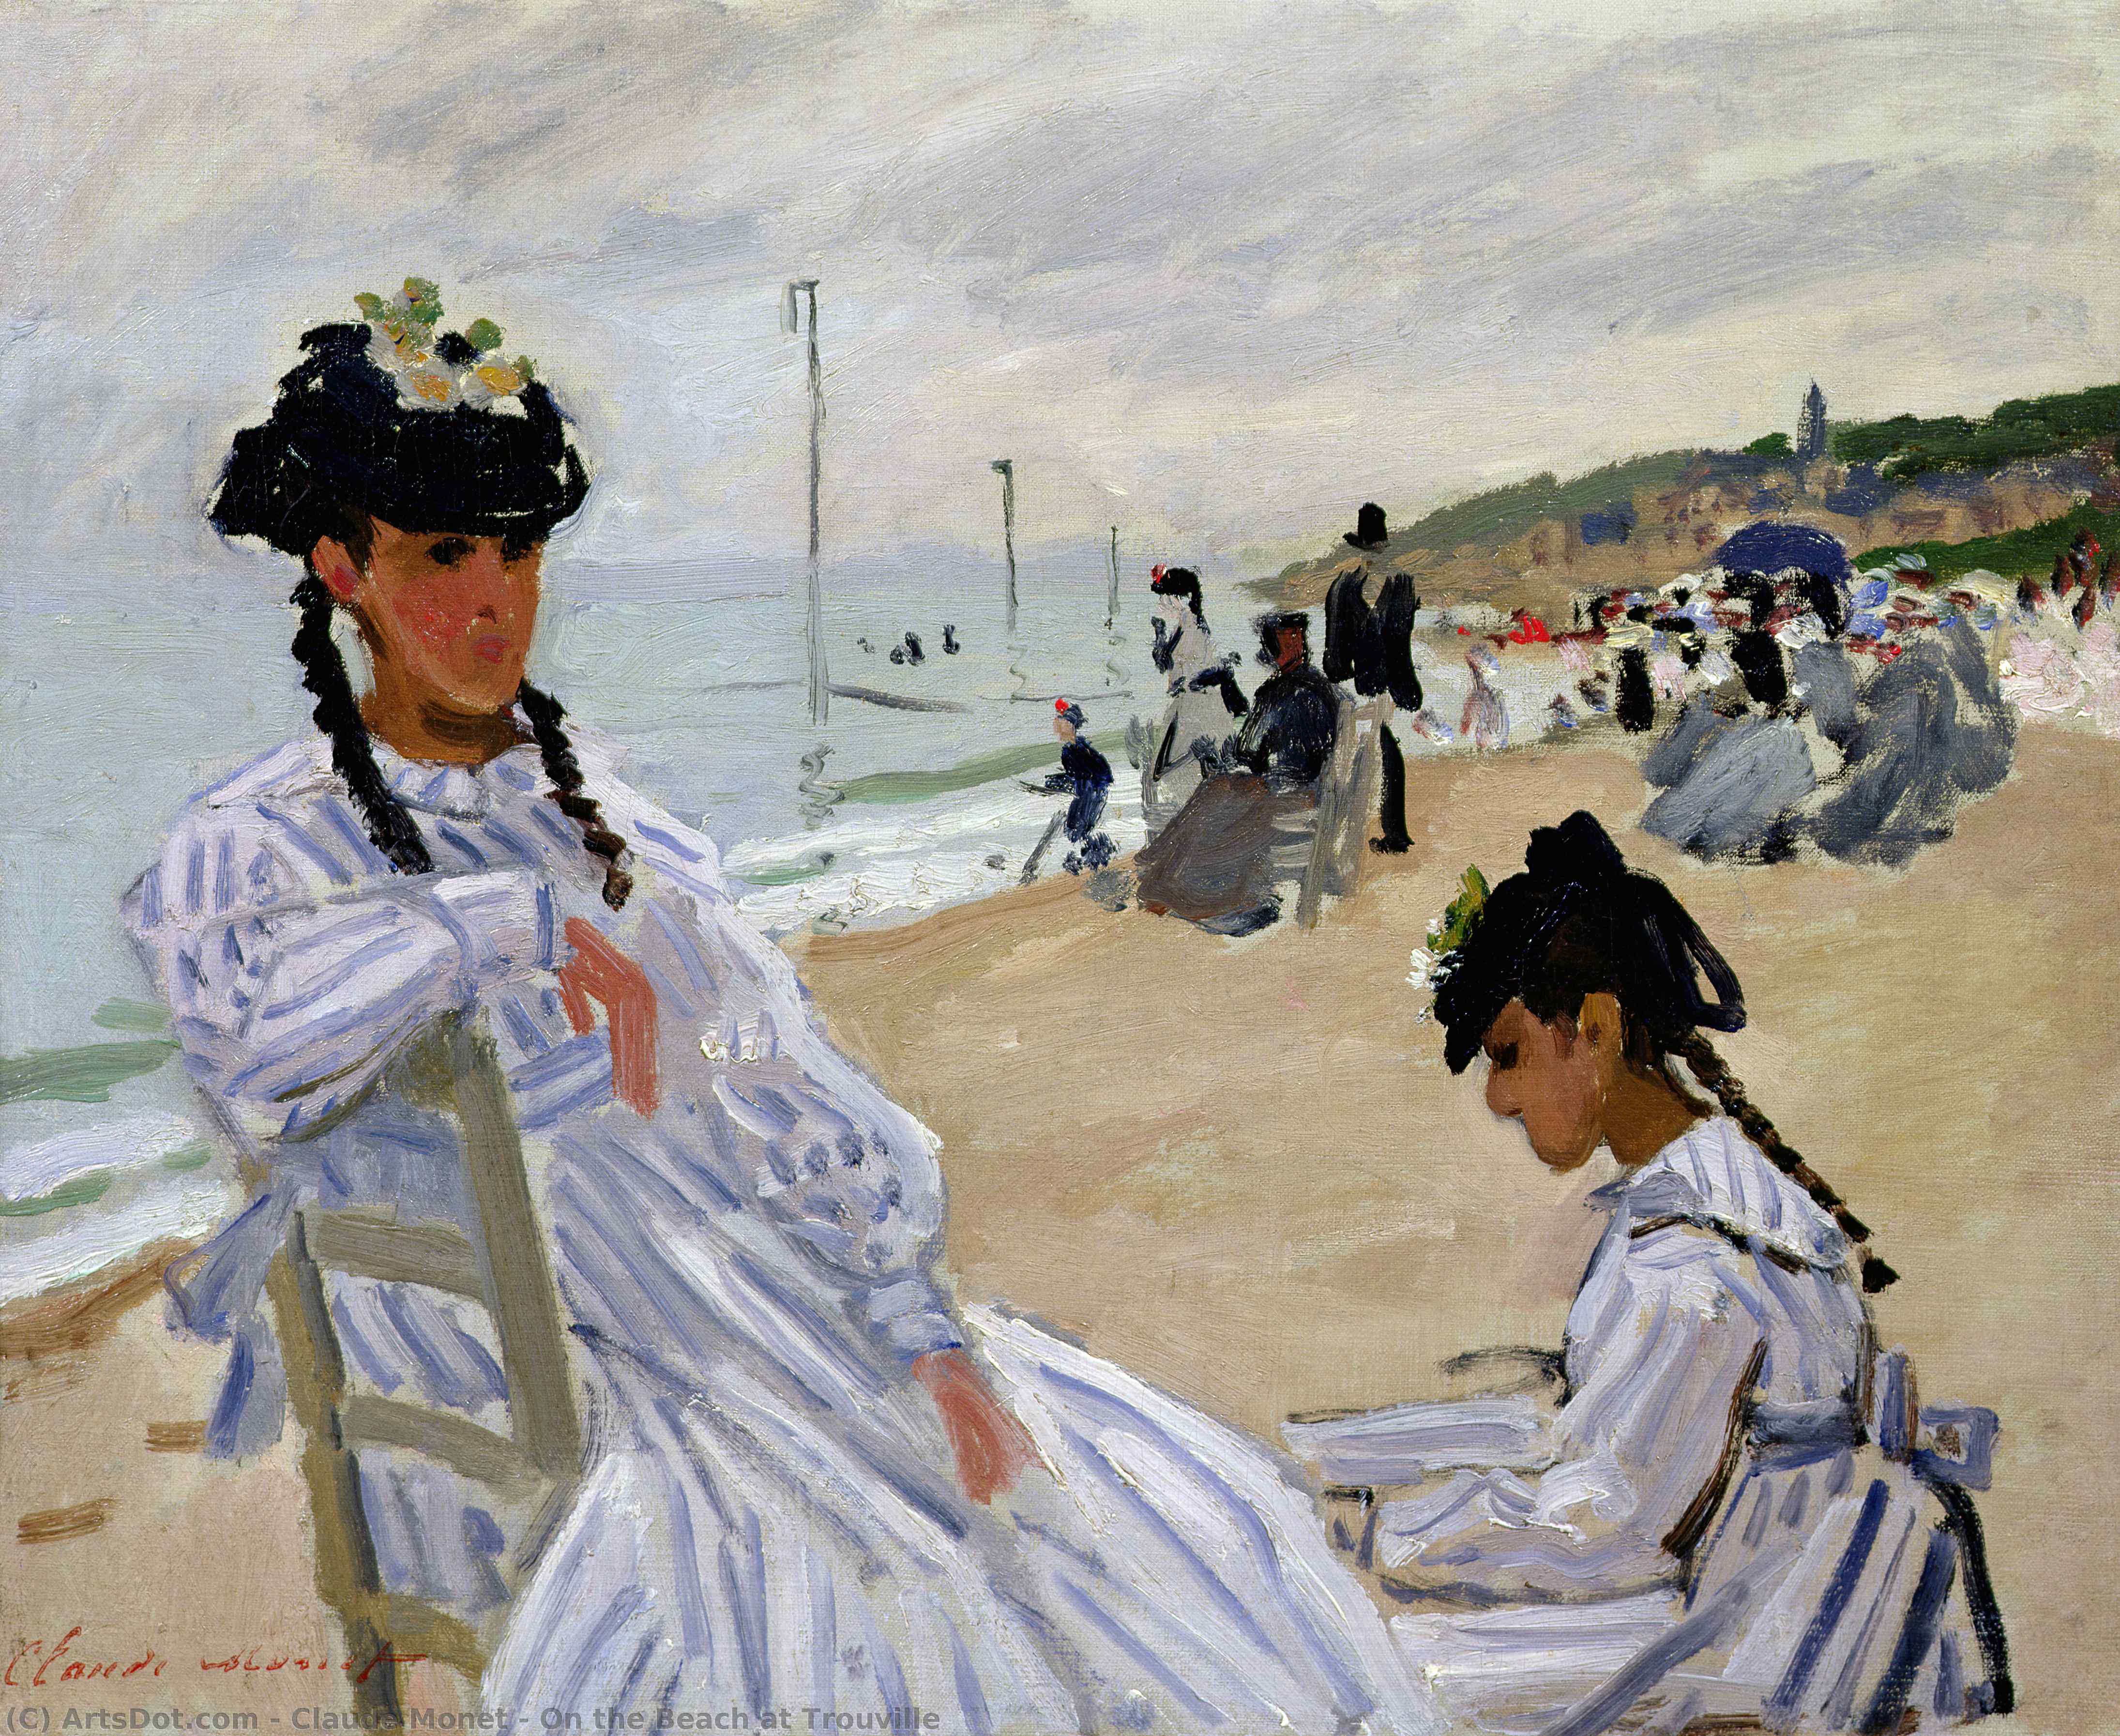 Achat Réplique De Peinture Sur la plage de Trouville, 1870 de Claude Monet (1840-1926, France) | ArtsDot.com